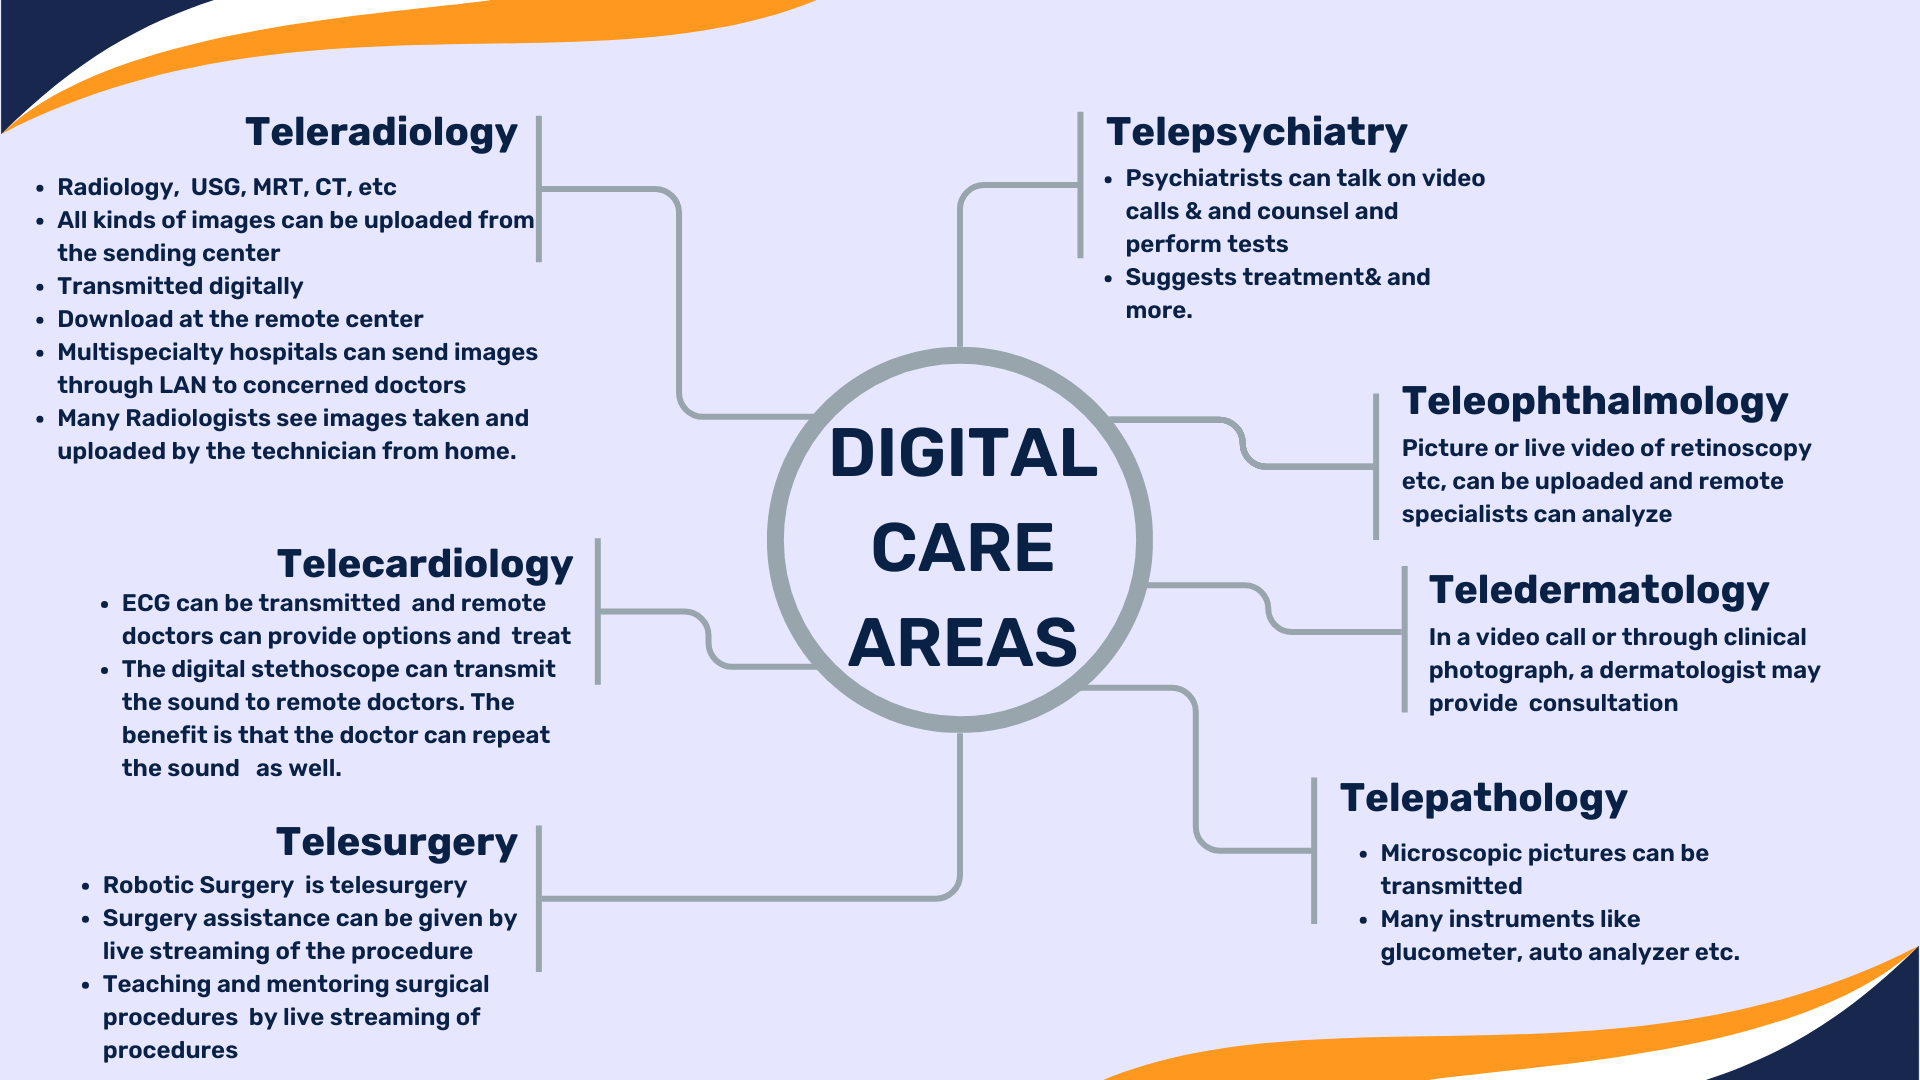 Digital Care Areas: Telemedicine